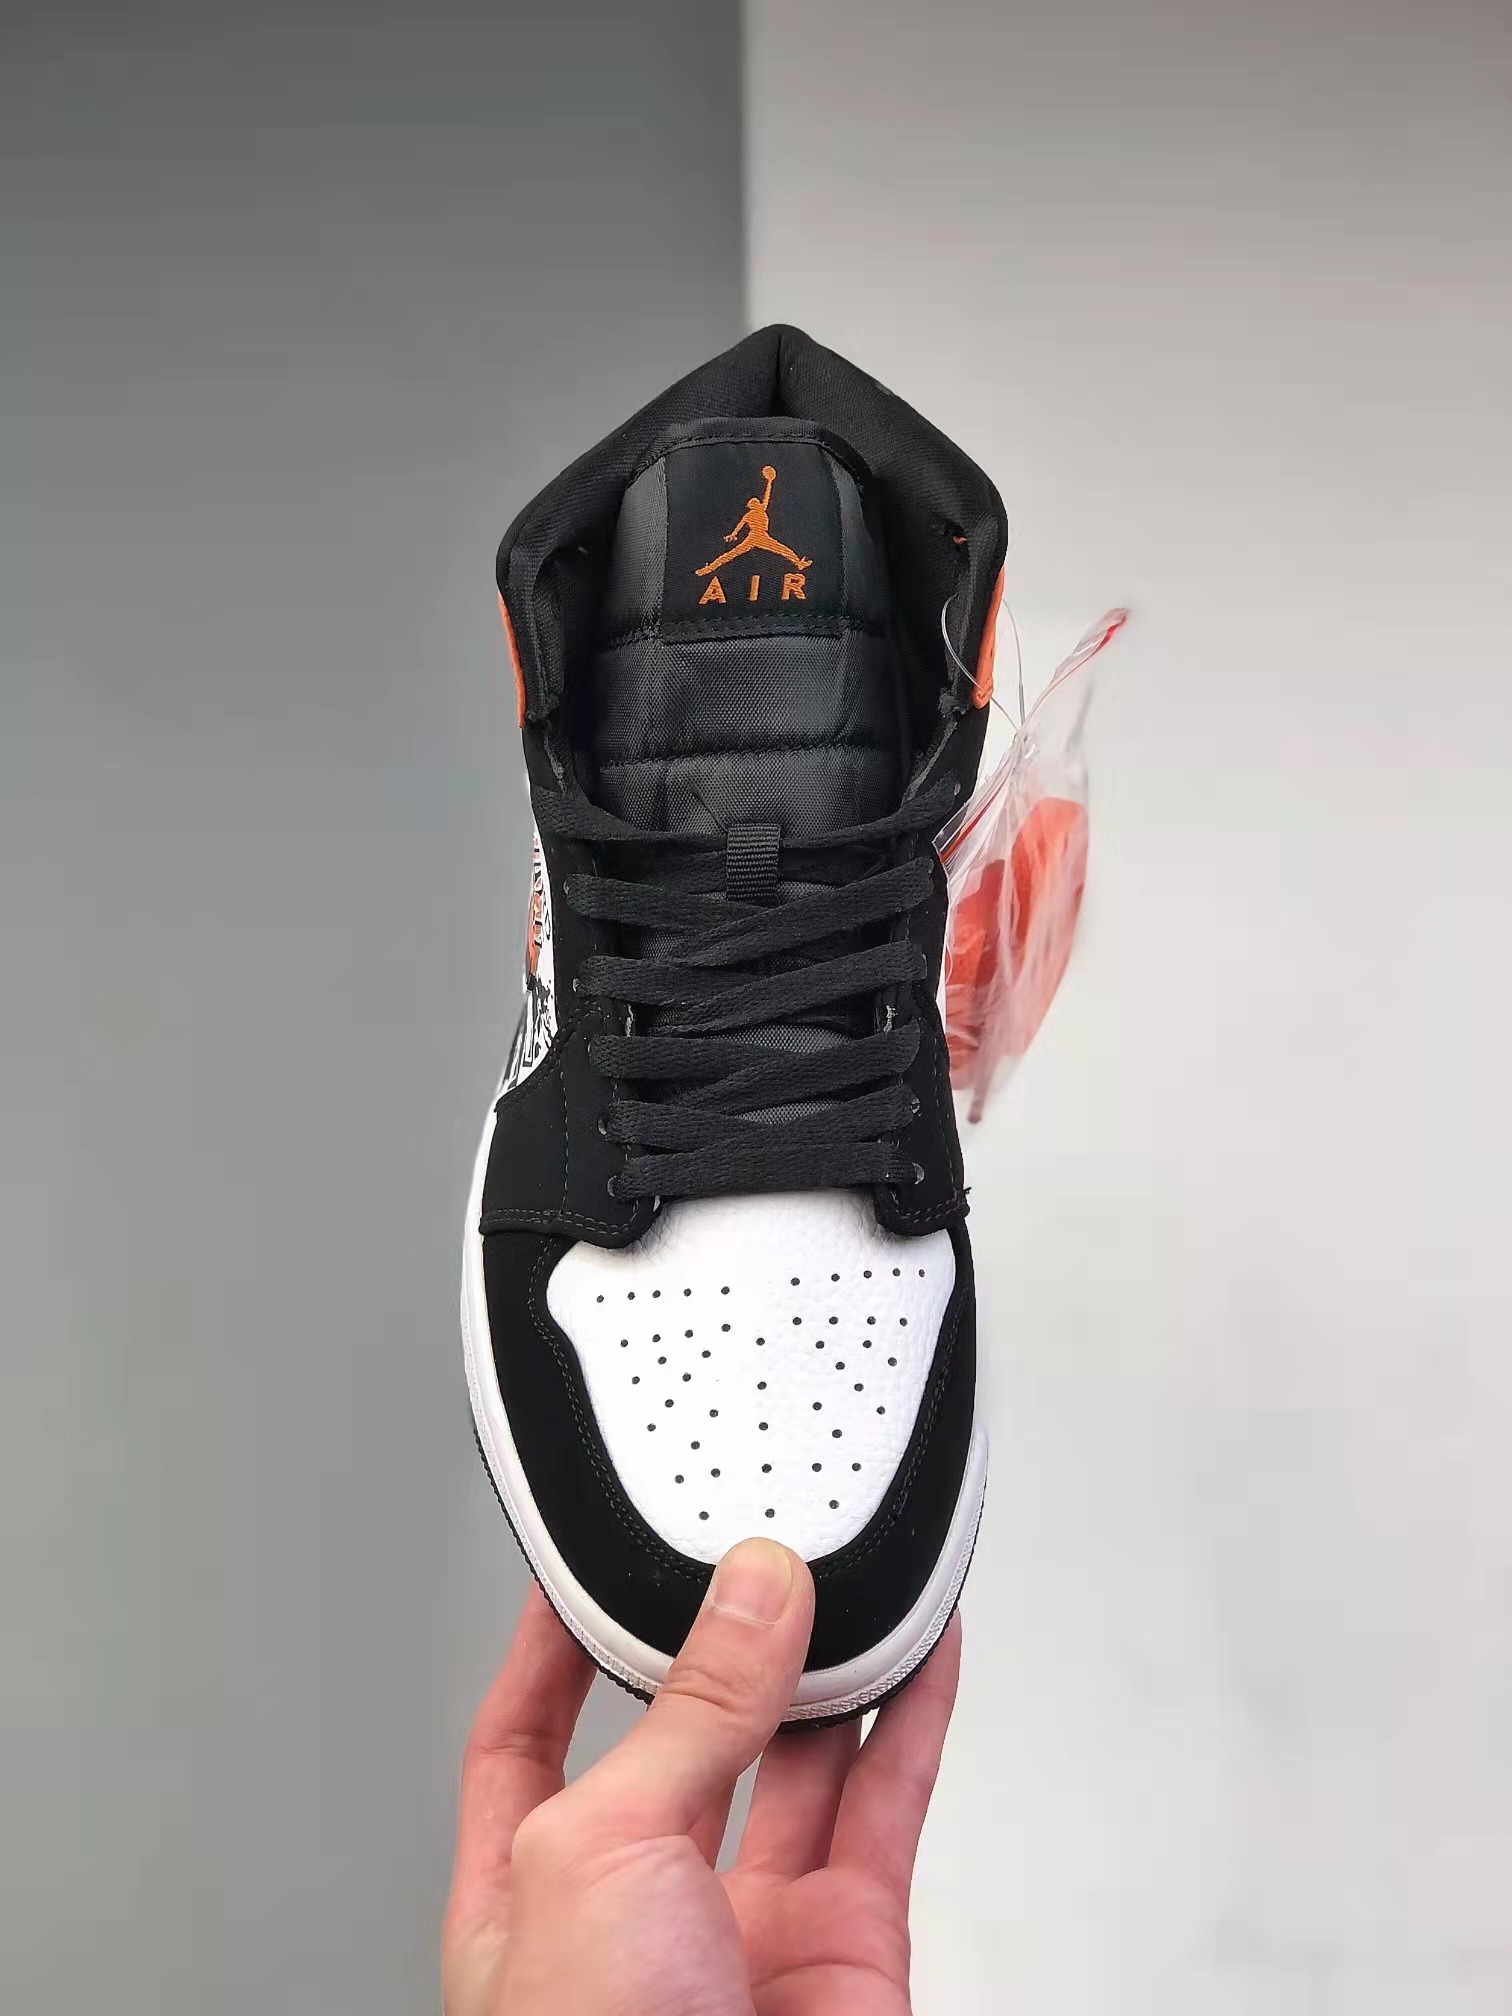 Air Jordan 1 Mid 'Shattered Backboard' 554724-058 - Premium Retro Sneakers